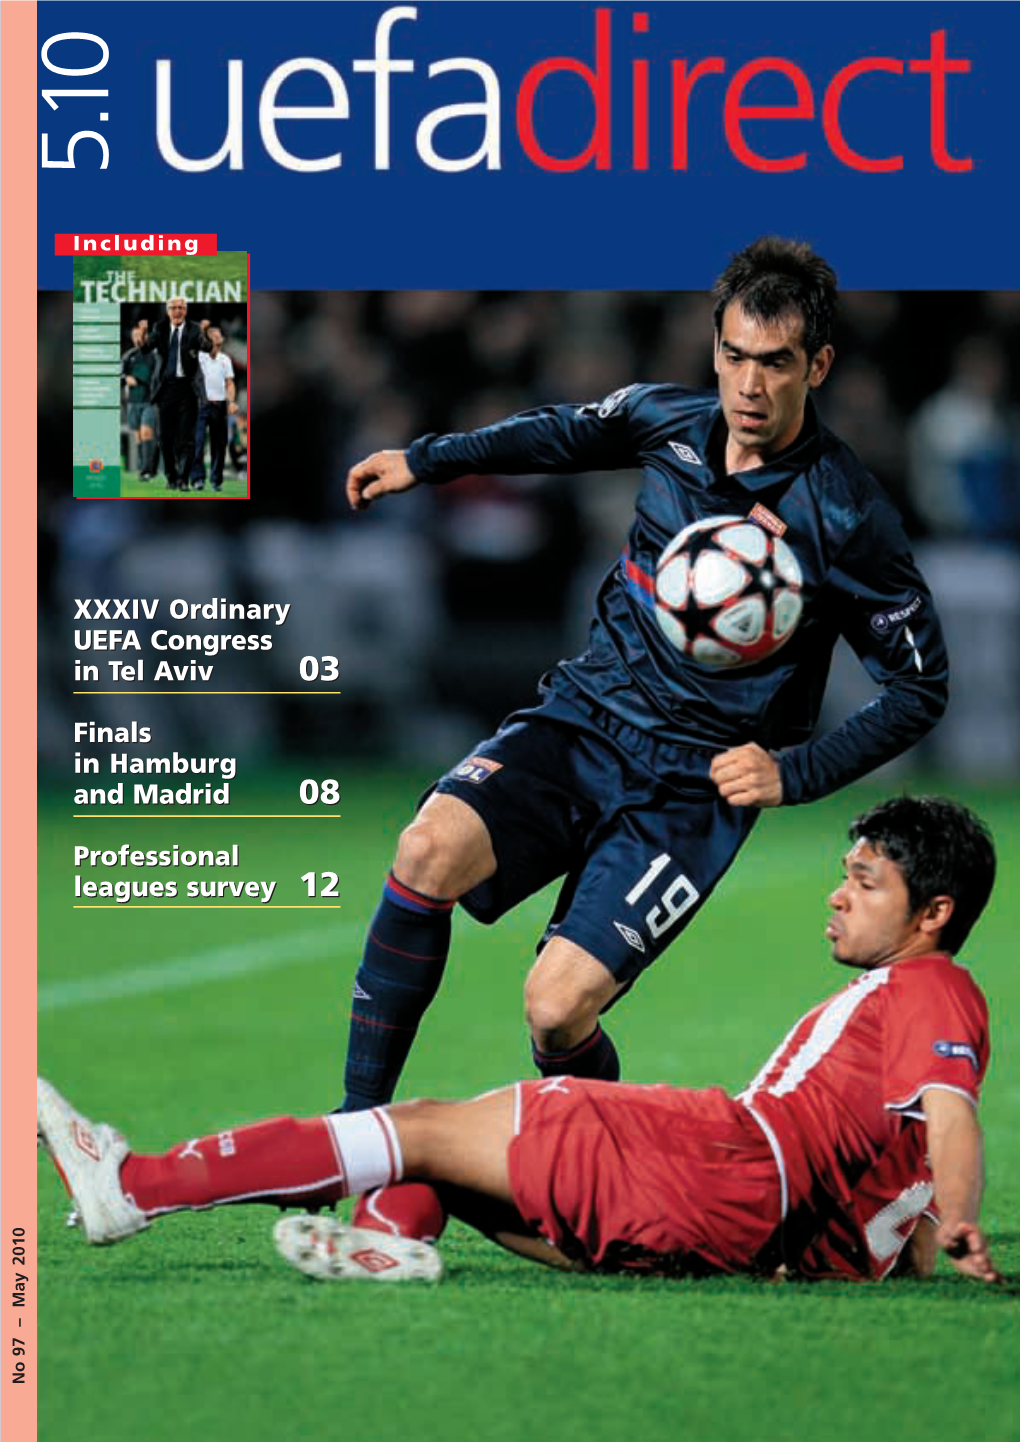 Uefadirect #97 (05.2010)